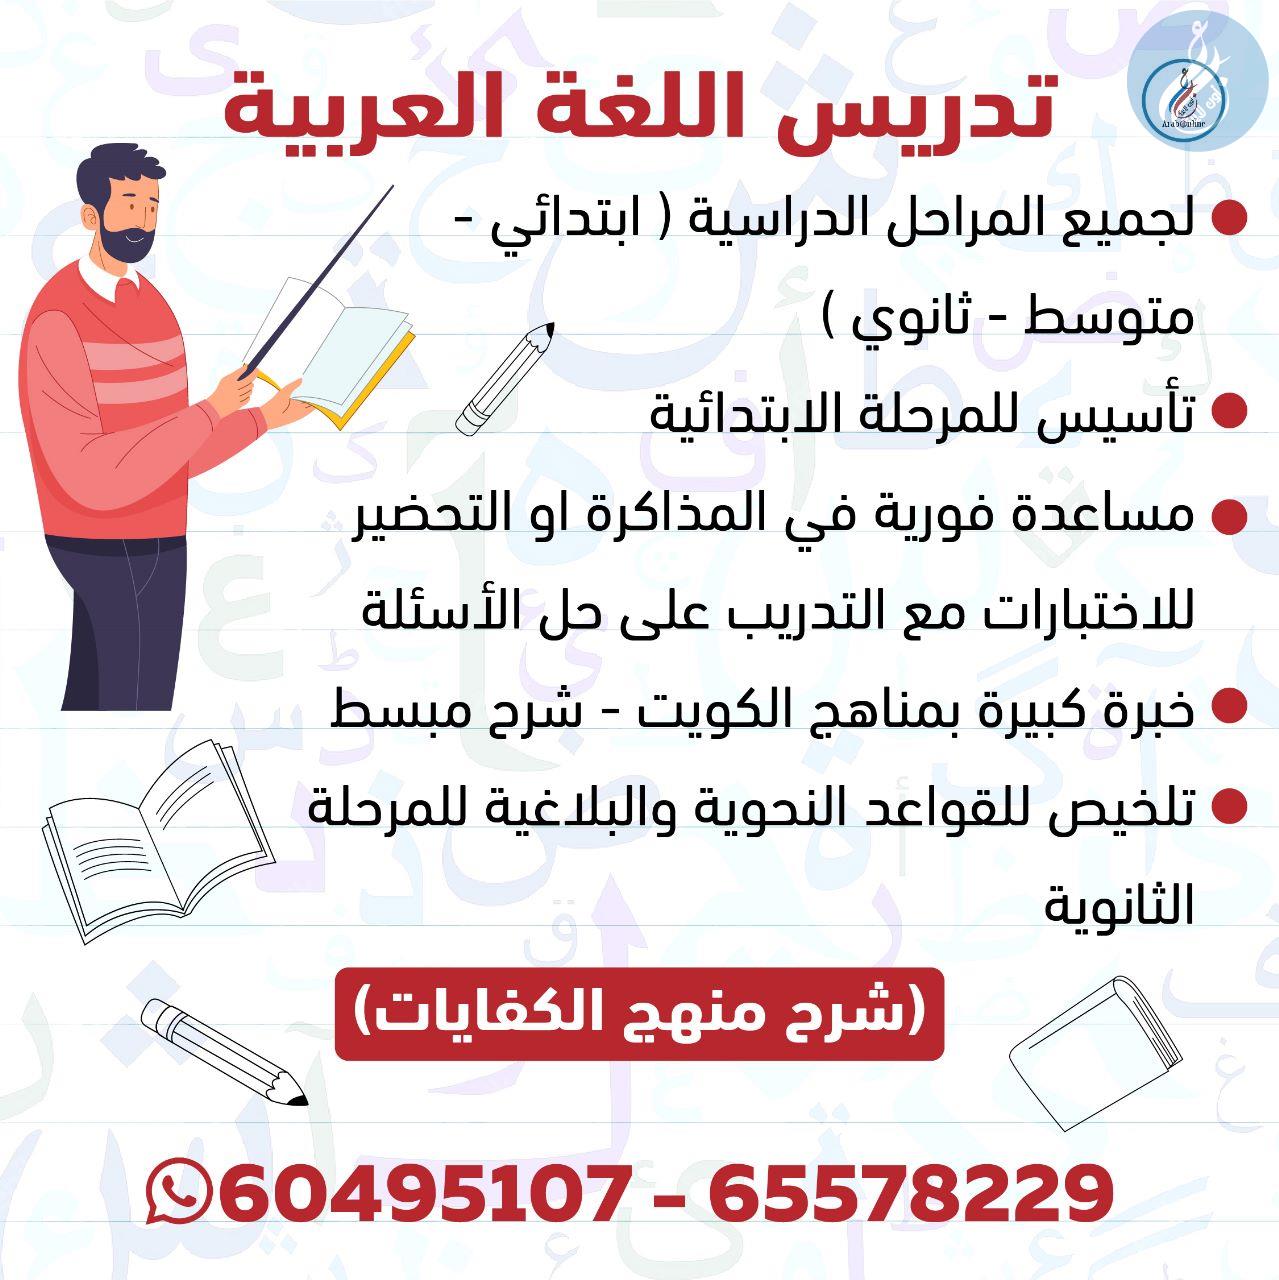 تدريس اللغة العربية / 65578229 - 60495107